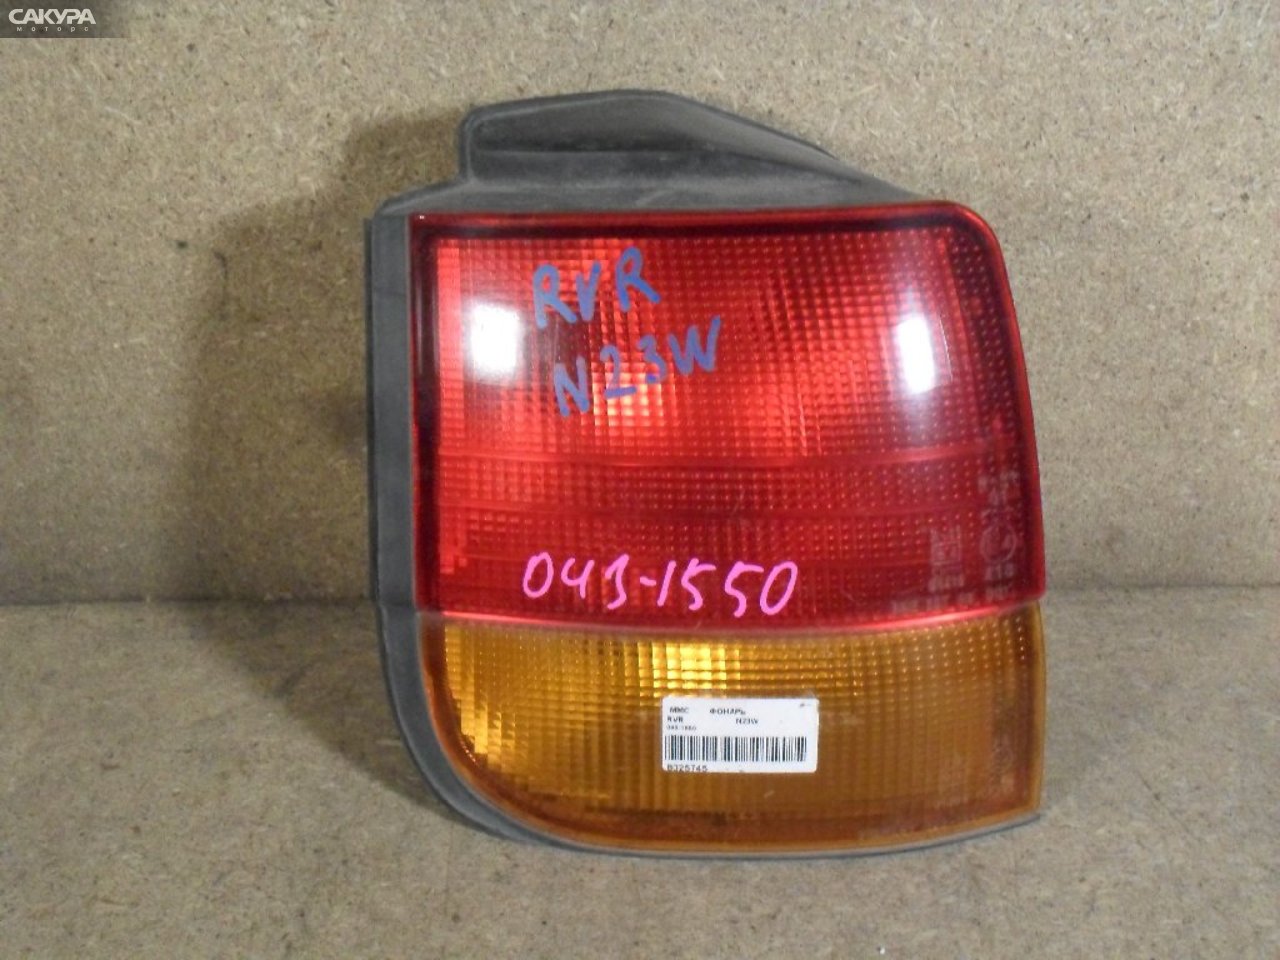 Фонарь стоп-сигнала левый Mitsubishi RVR N23W 043-1550: купить в Сакура Абакан.